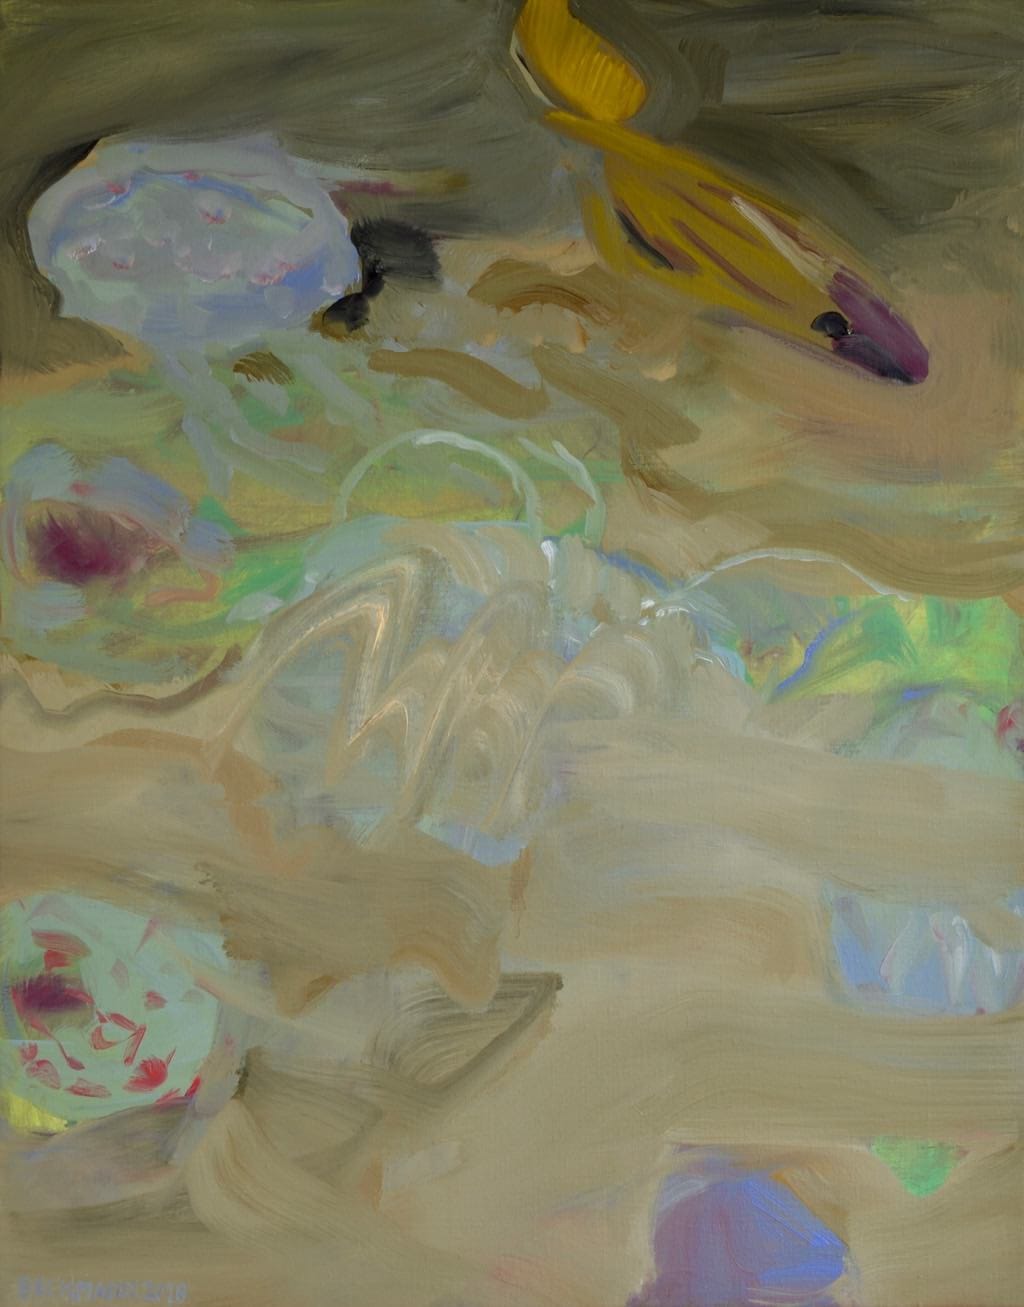 Sabine Beckmann, Underwater Visions, 70 x 55 cm, oil on linen, 2018